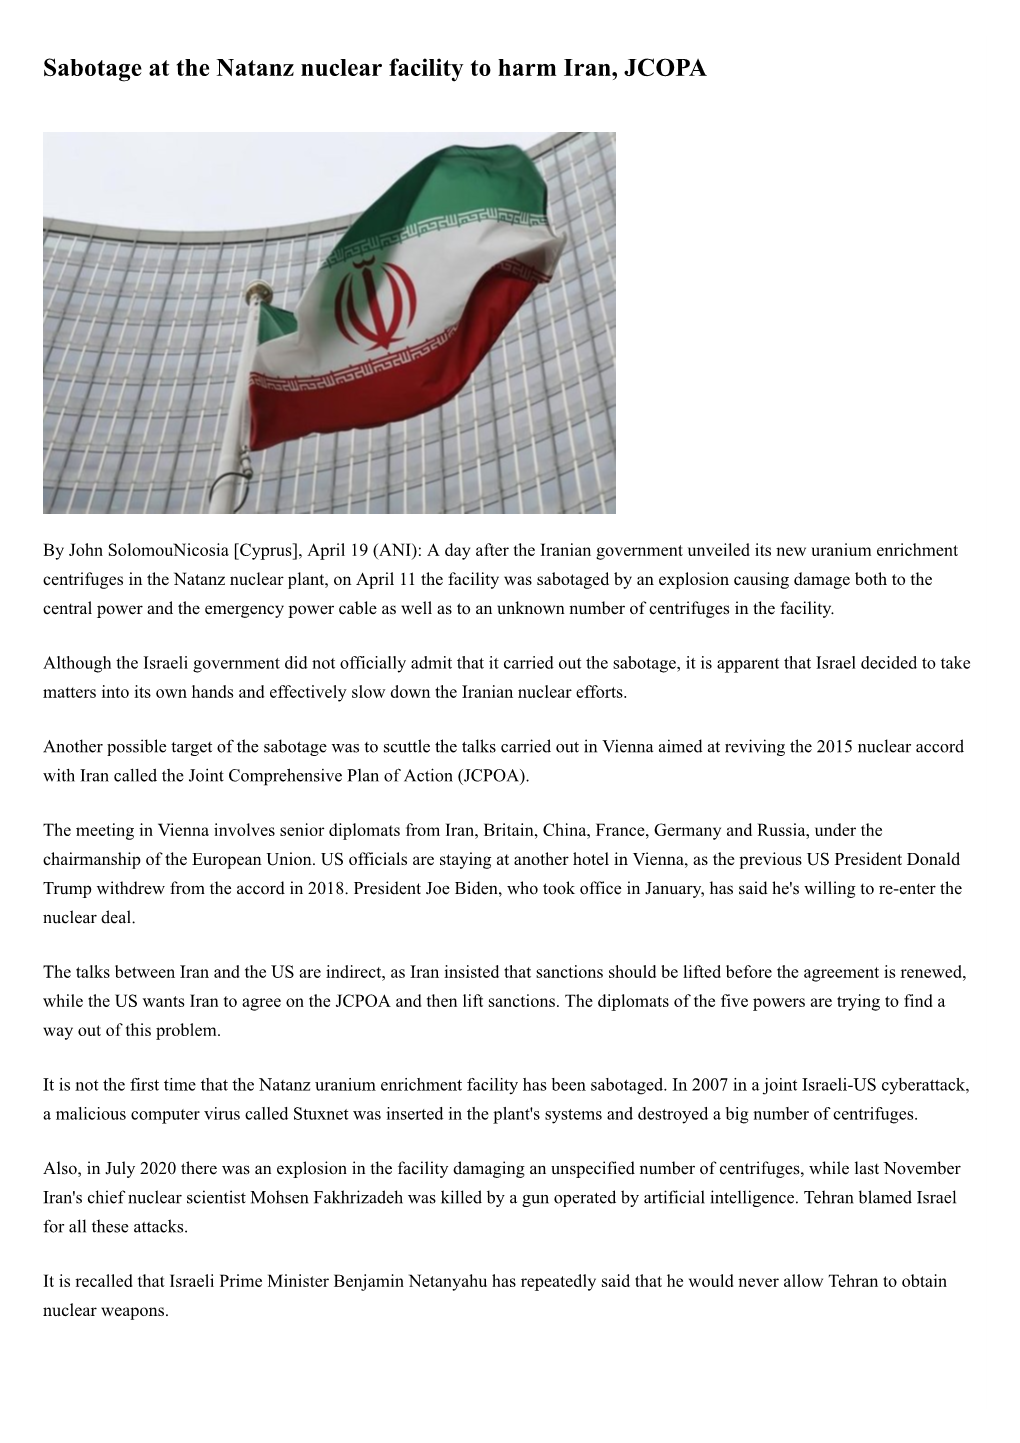 Sabotage at the Natanz Nuclear Facility to Harm Iran, JCOPA